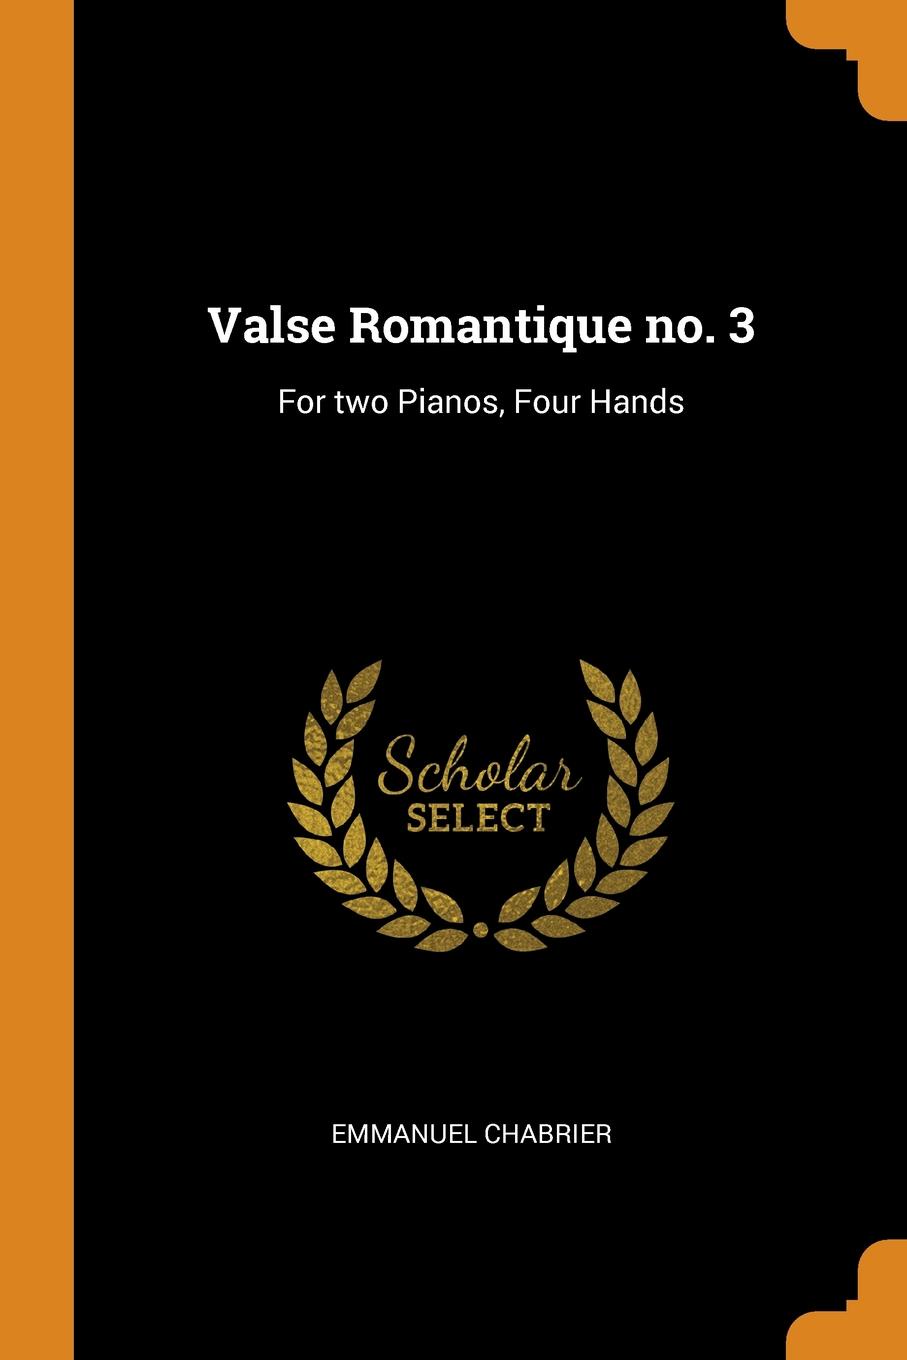 Valse Romantique no. 3. For two Pianos, Four Hands